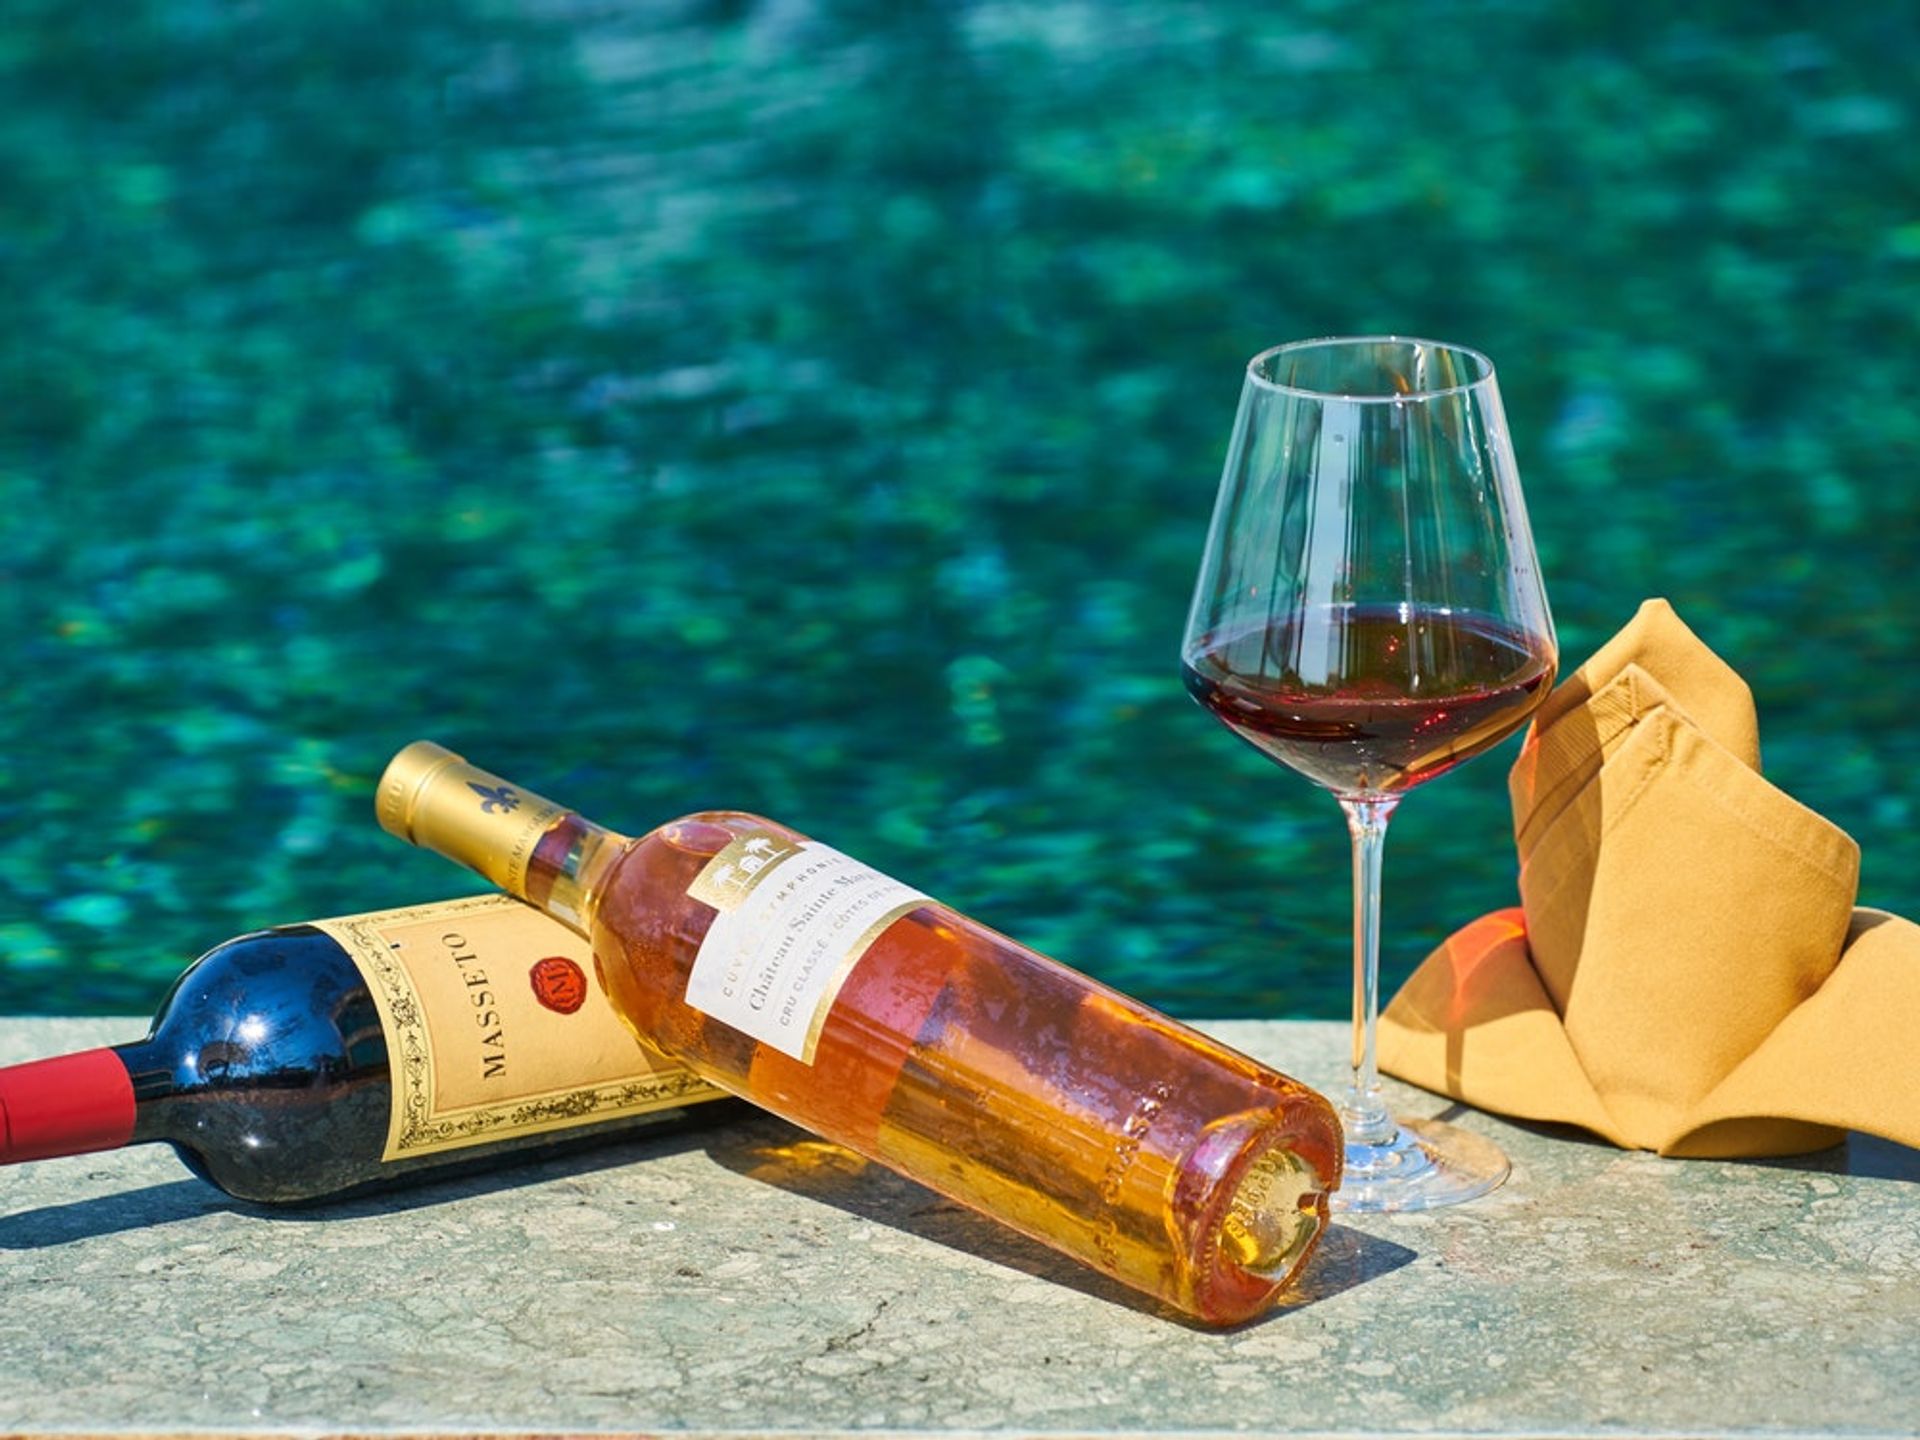 De volgende Levendig Graag gedaan Wijnliefhebbers opgelet: je kan nu drijvende wijnglazen kopen voor op het  strand - Girlscene